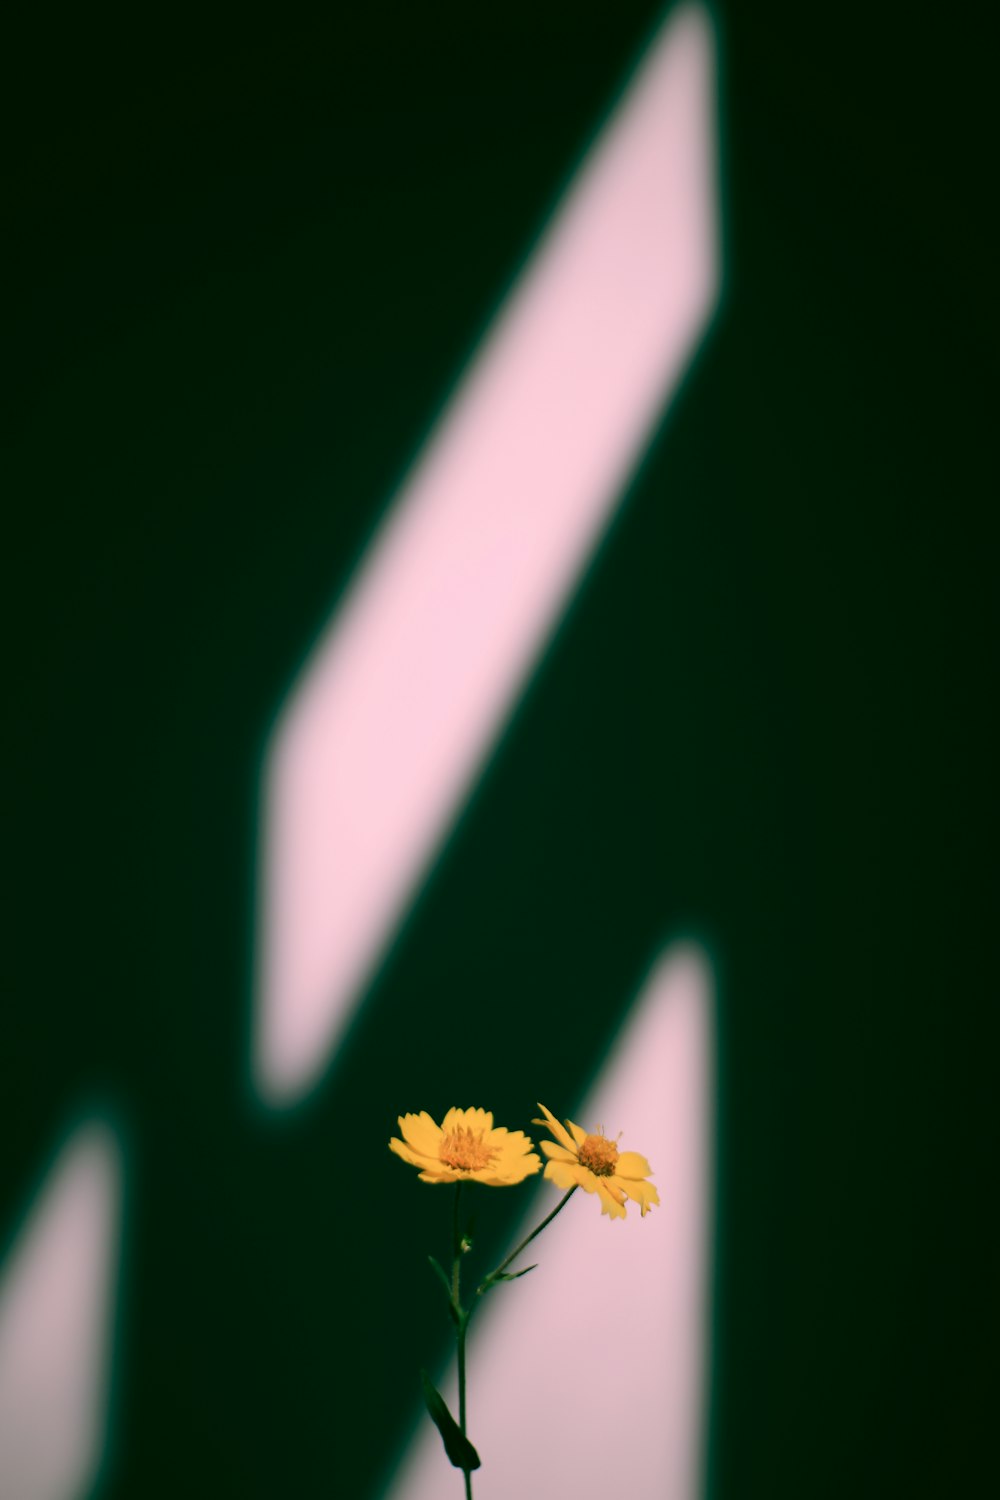 노란 꽃잎 꽃